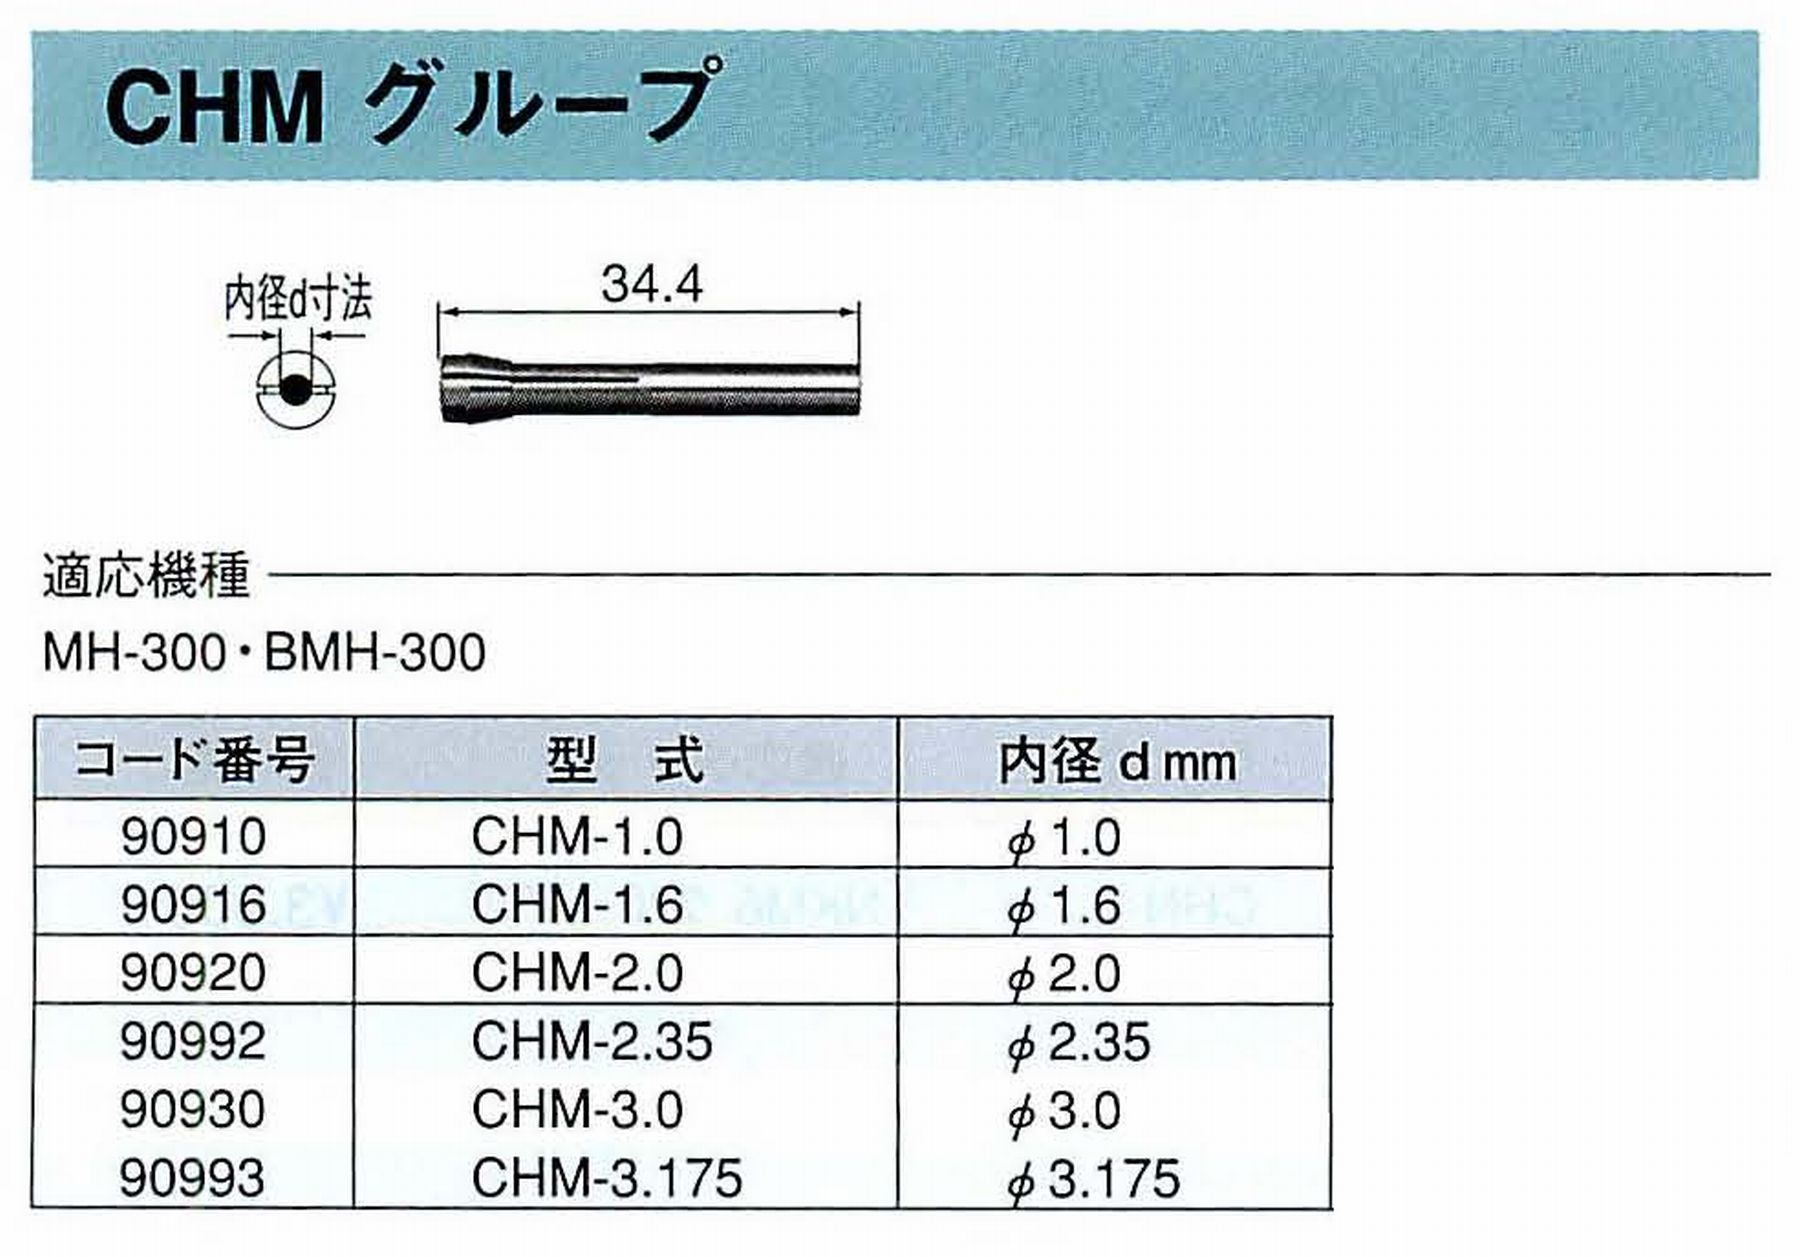 ナカニシ/NAKANISHI コレットチャック コード番号 90916 型式 CHM-1.6 内径:Φ1.6